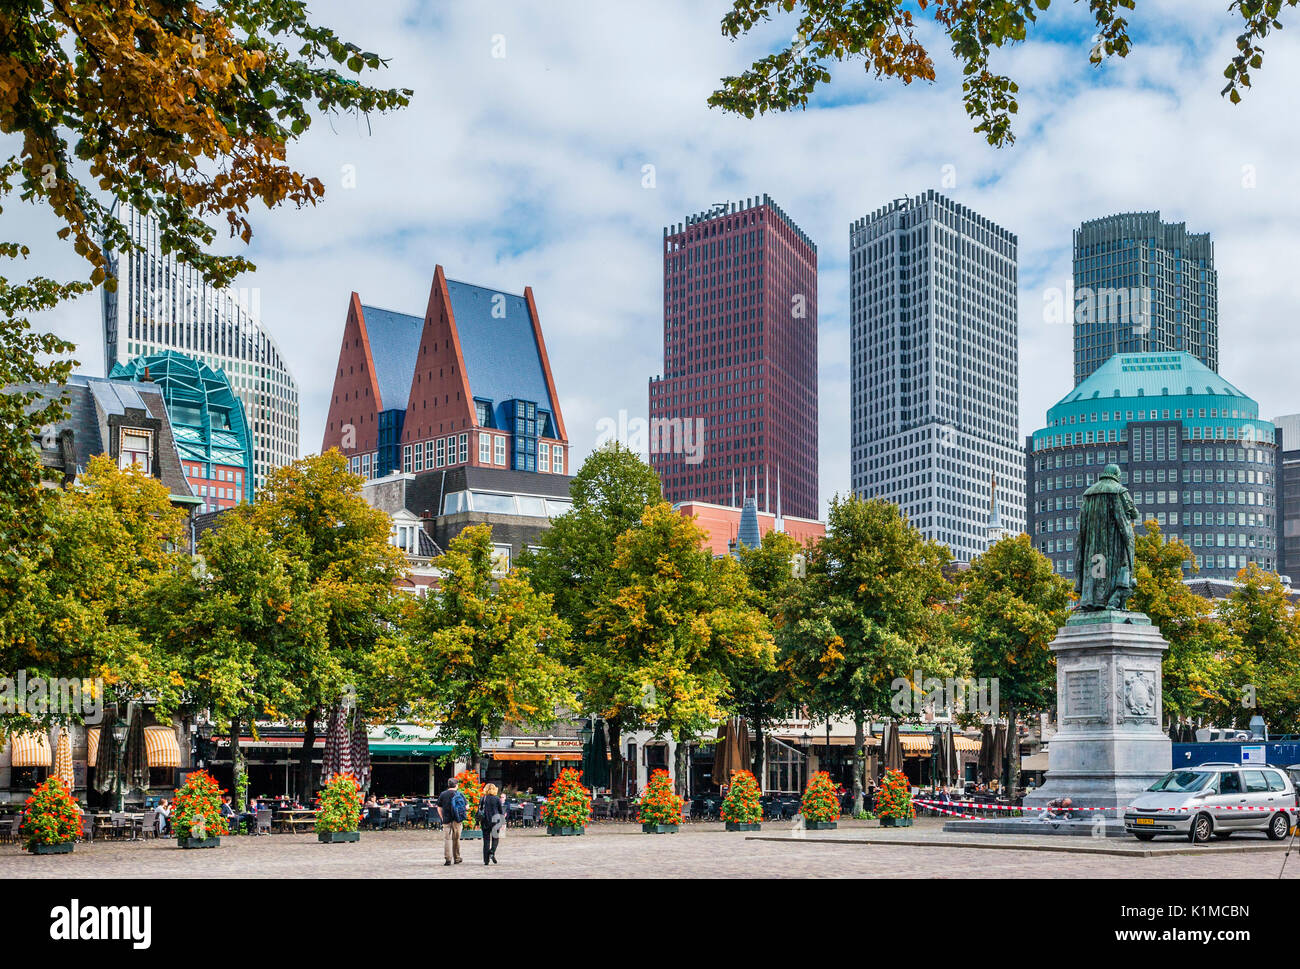 Niederlande, Südholland, Den Haag (Den Haag), Het Plein (das Quadrat), modernes Hochhaus Panorama vom Plein gesehen Stockfoto